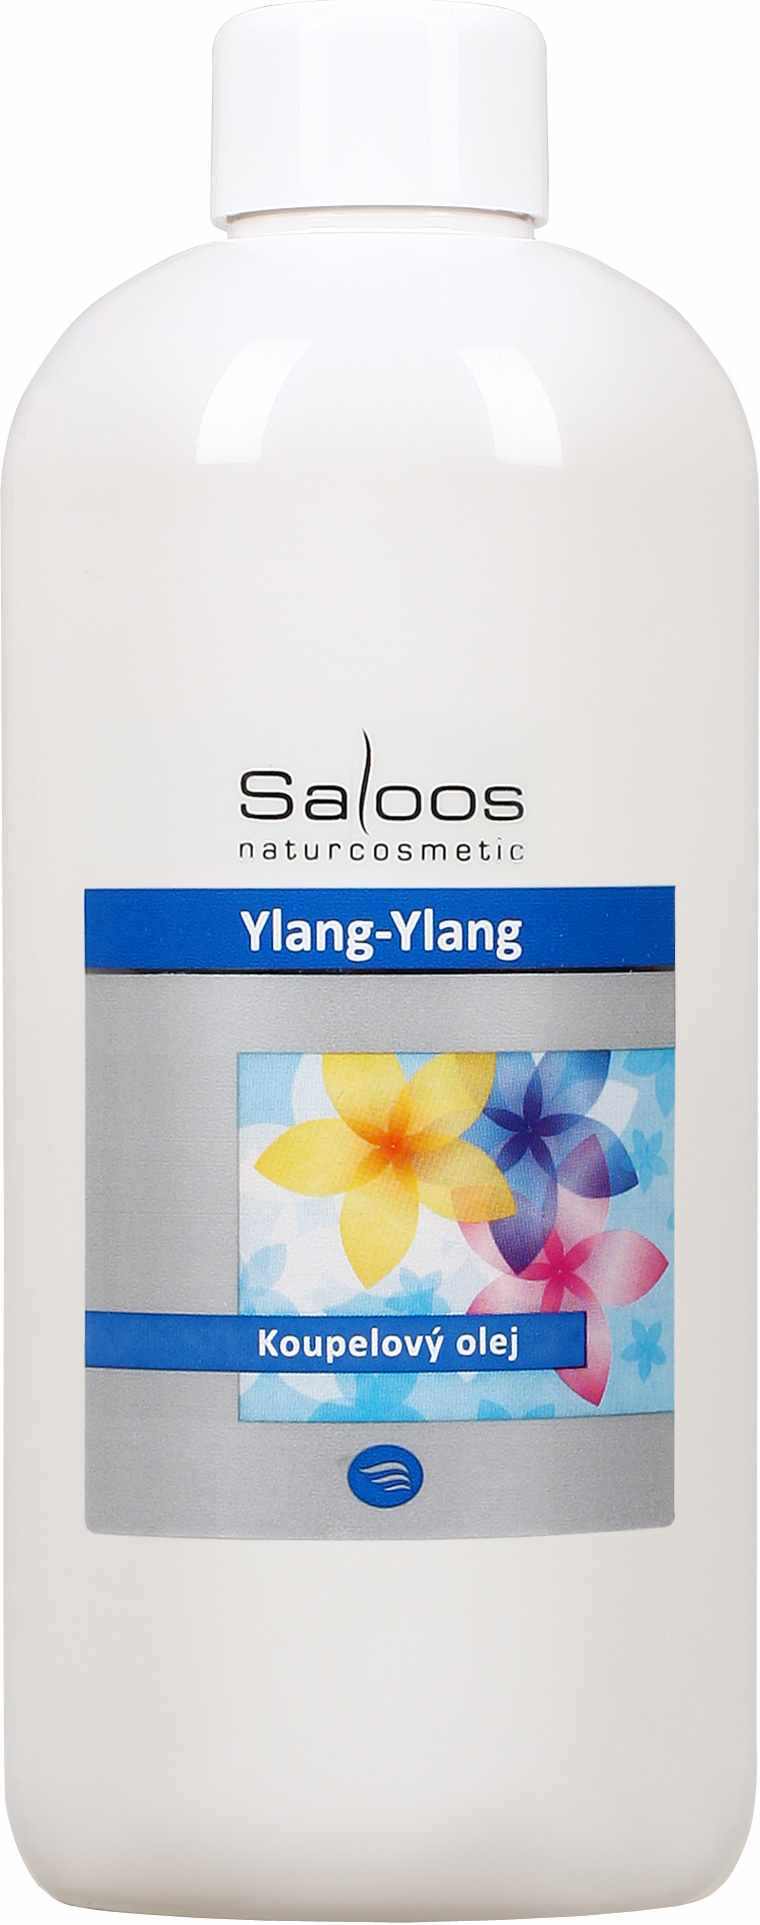 Saloos Ylang-ylang - koupelový olej Balení: 1000 ml